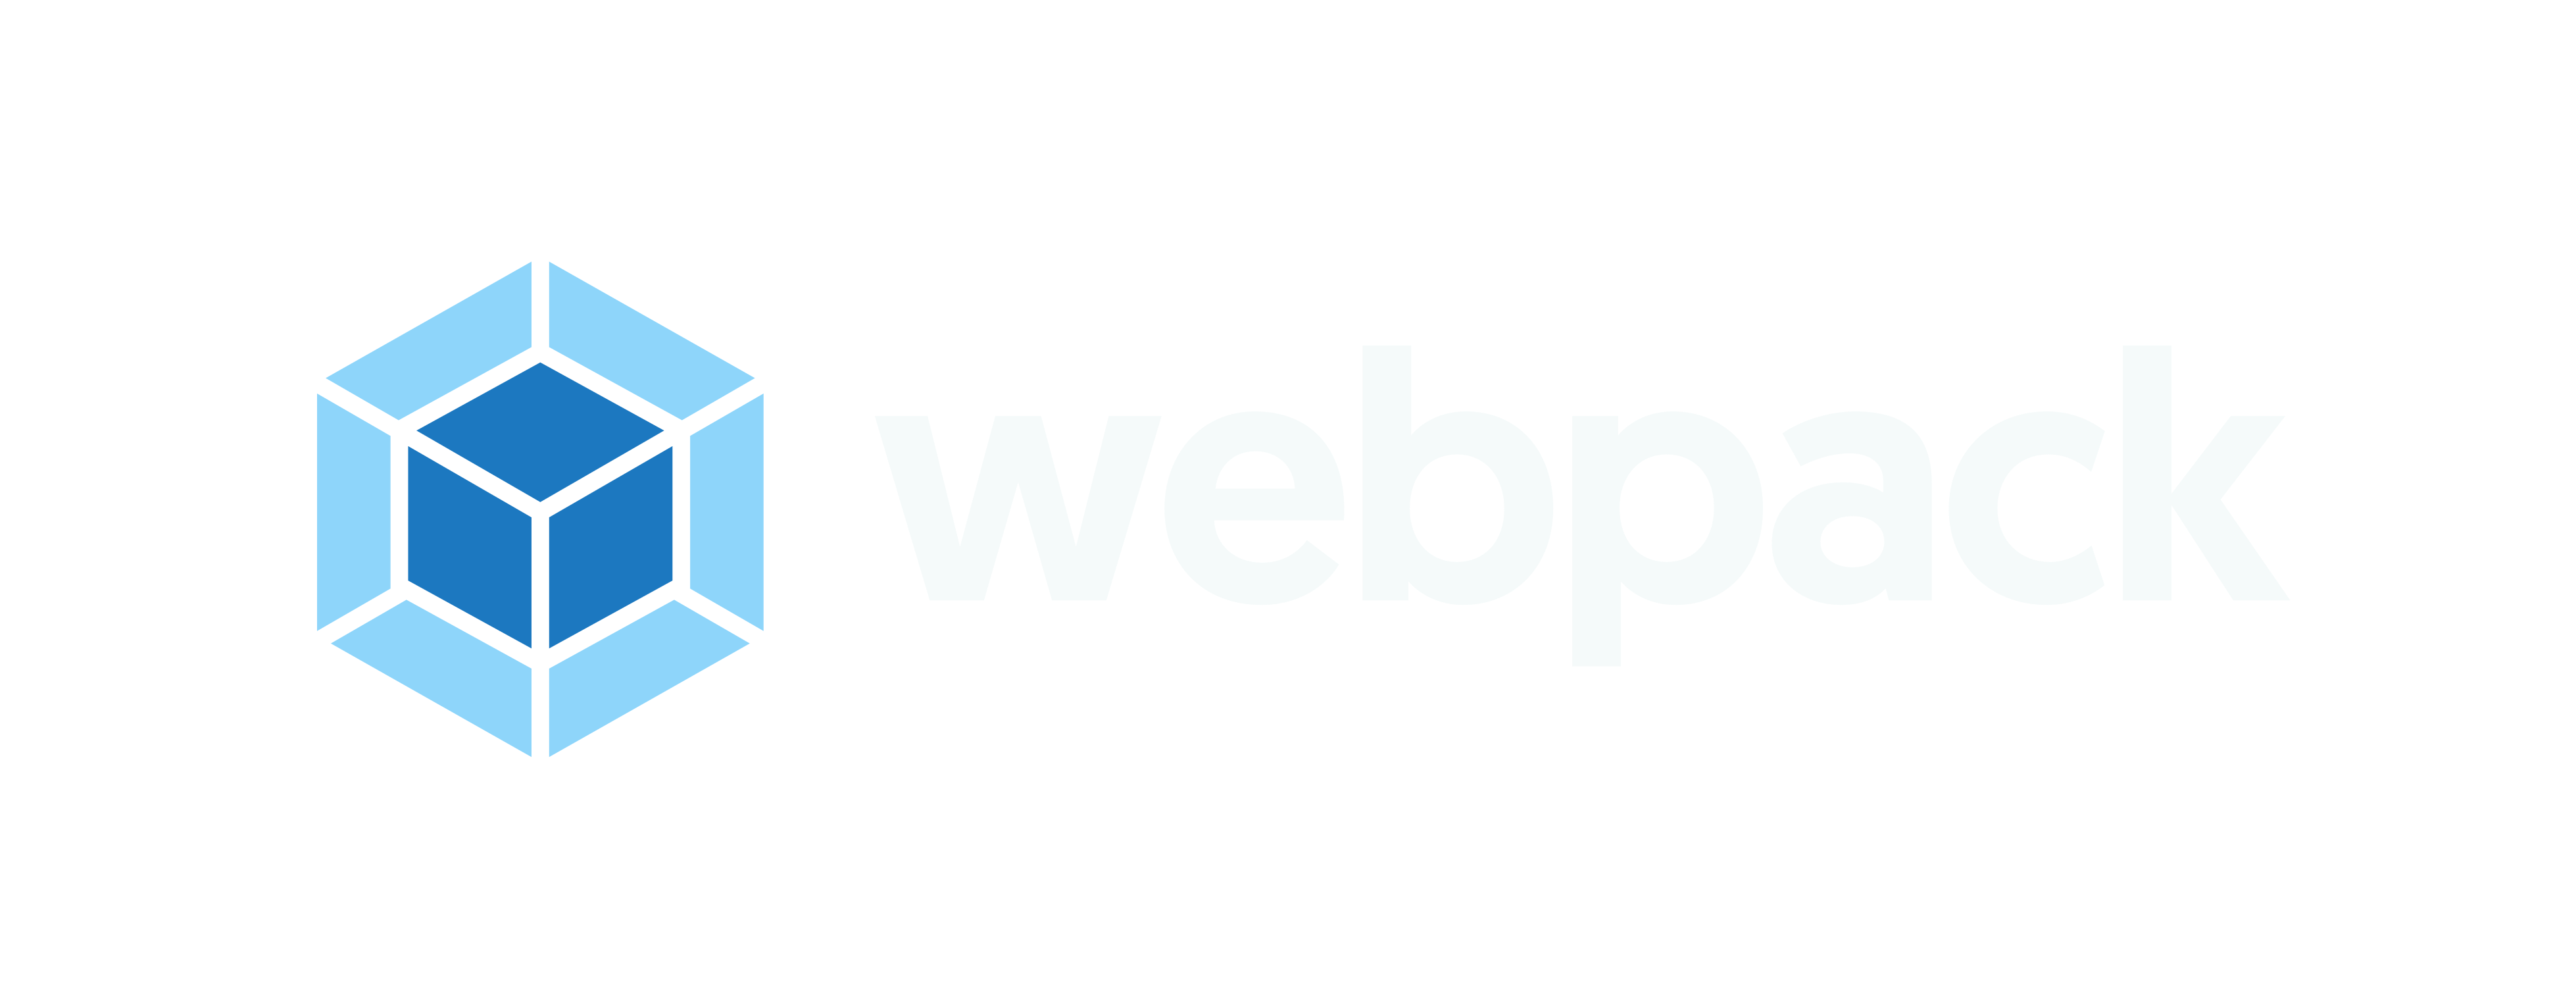 webpack logo default with proper spacing on light background